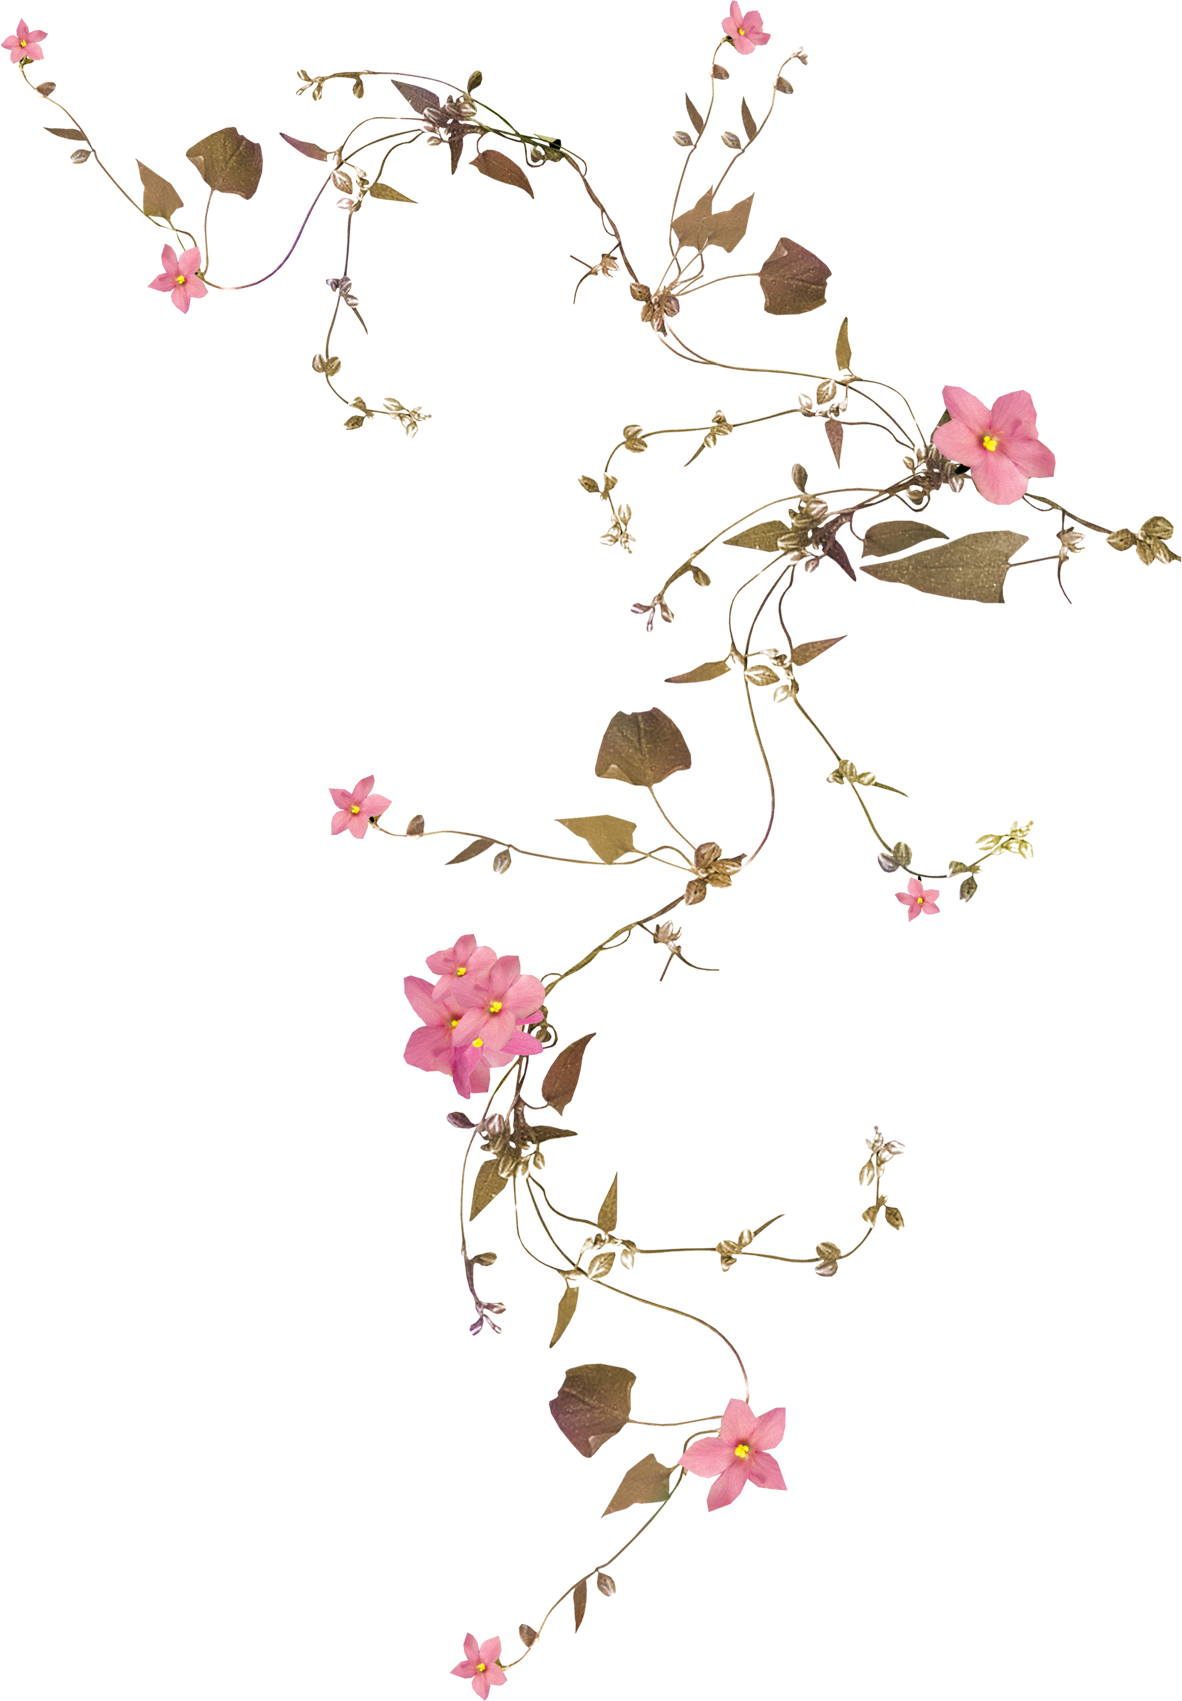 Flower Vine Drawing Png : Download transparent flower vine png for free ...